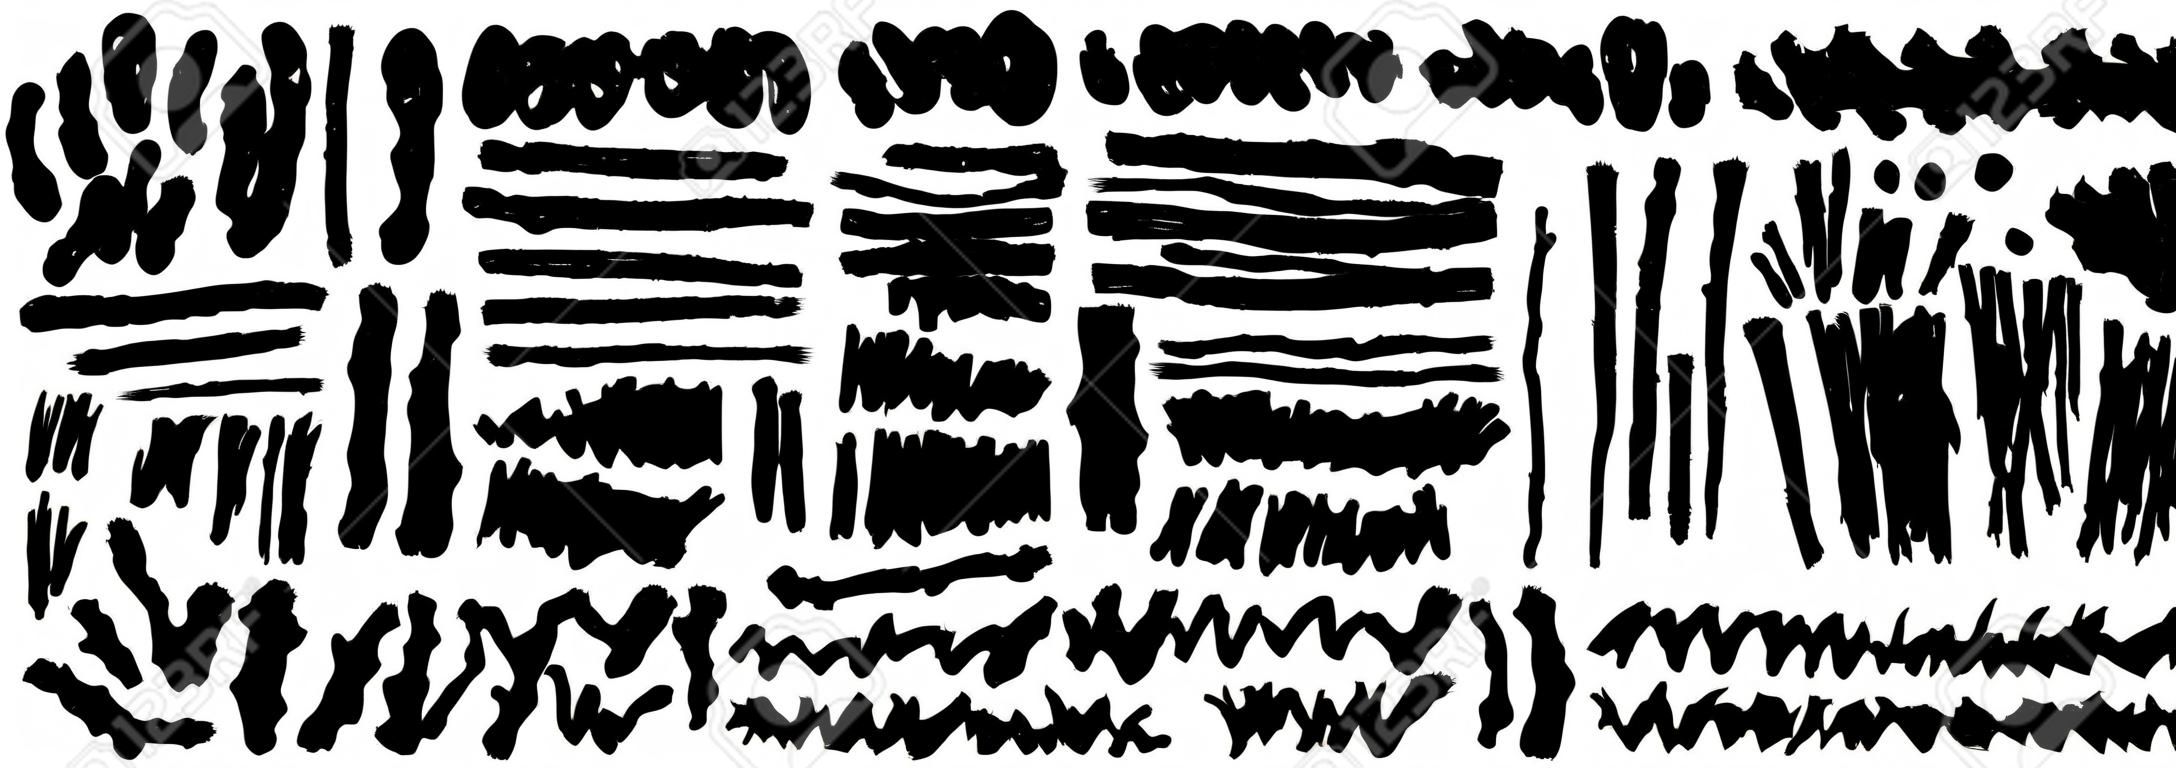 Zestaw dłoni rysuje pociągnięcia pędzla czarną farbą, linie brudne artystyczne elementy projektu grunge wektor